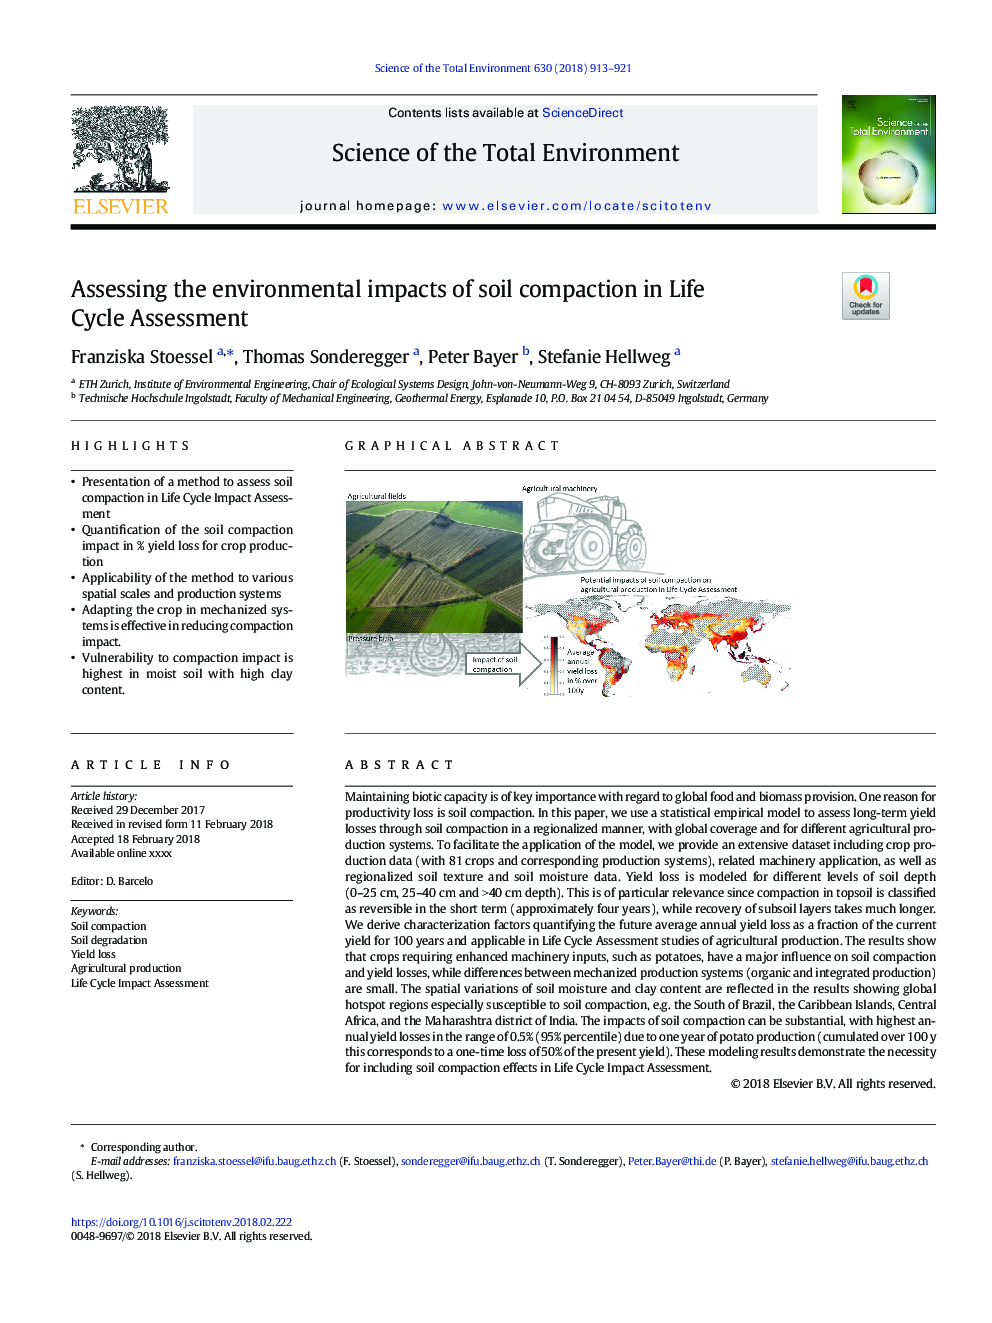 ارزیابی اثرات زیست محیطی فشردگی خاک در ارزیابی چرخه زندگی 